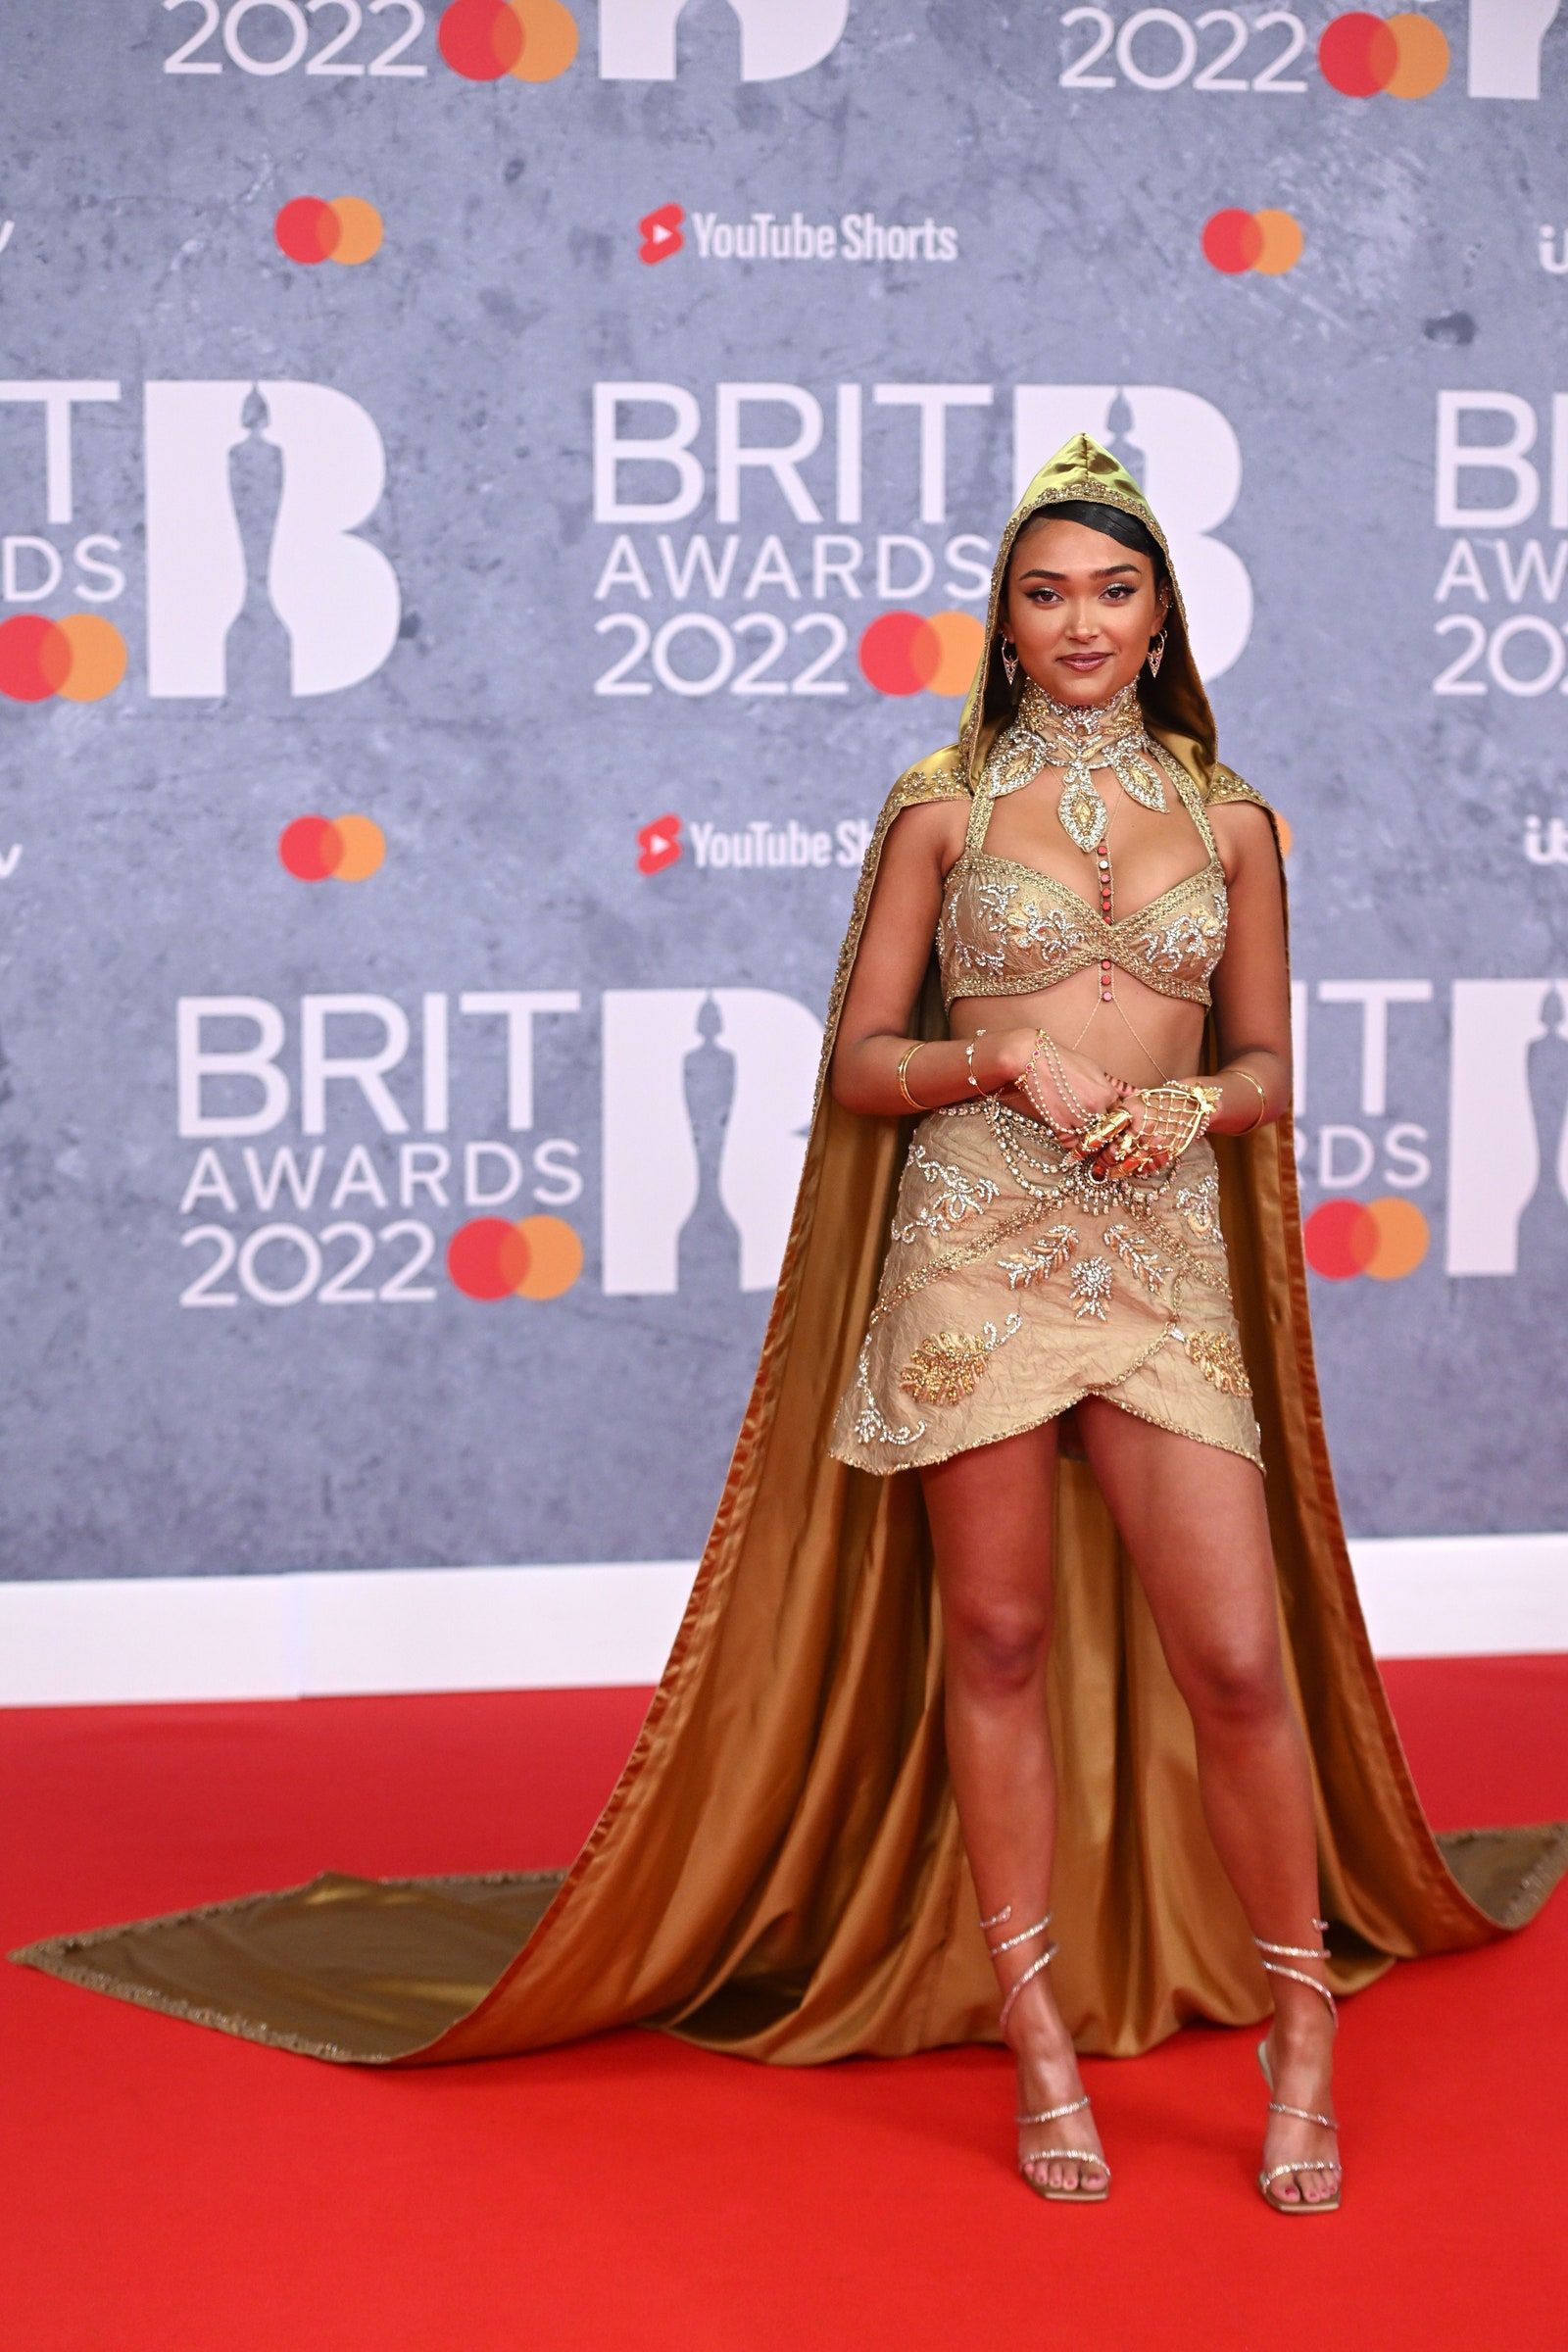 Gaya Seksi Para Seleb di Red Carpet Brit Awards 2022